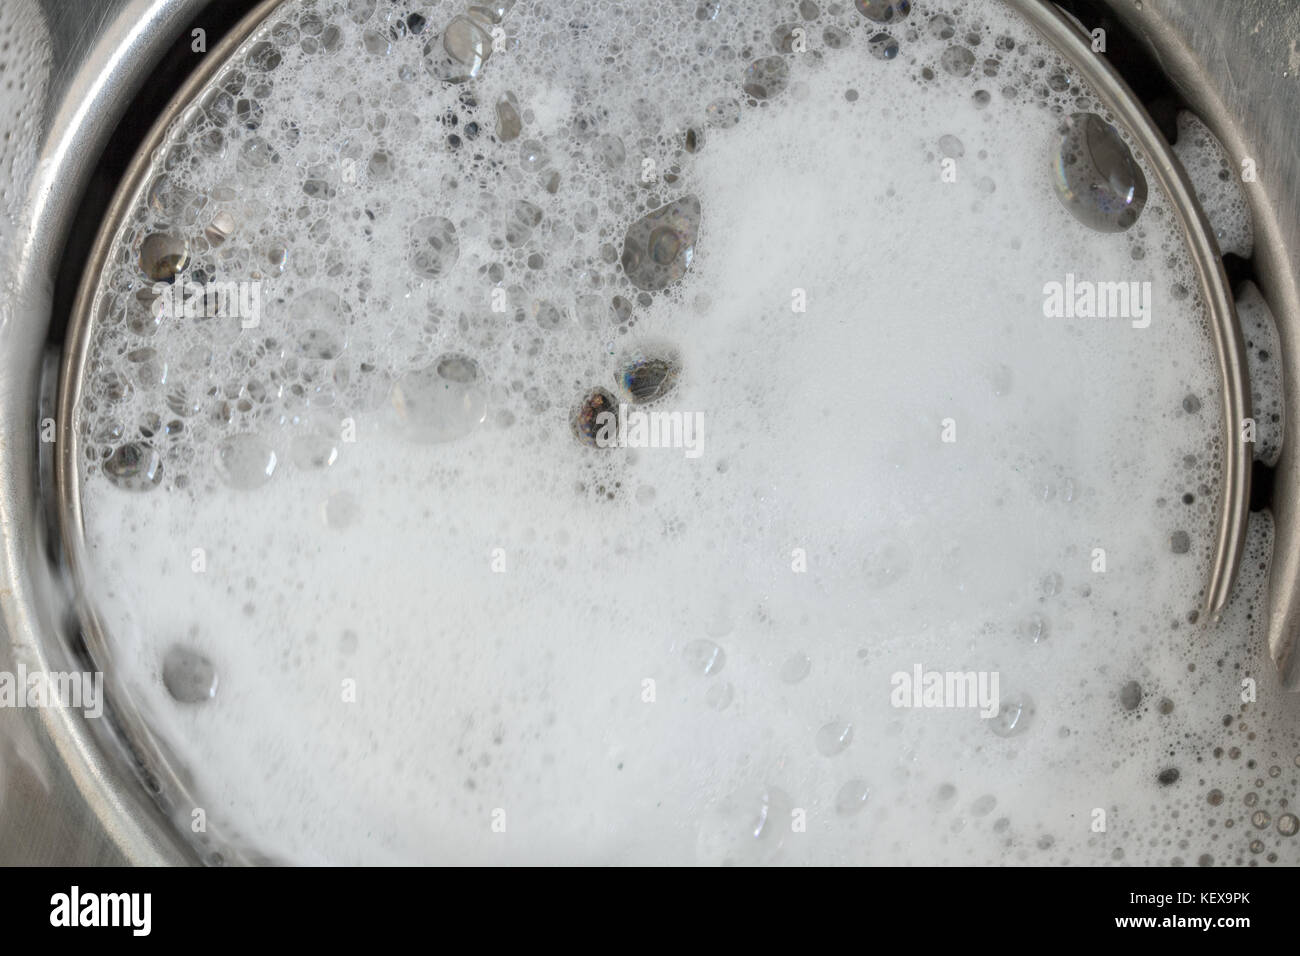 La blanca espuma con burbujas de cleane en un lavabo. Orificio de drenaje con burbujas de jabón en el fregadero de metal, macro vista. Ajustable mecánicamente el tapón de drenaje closeup. Foto de stock